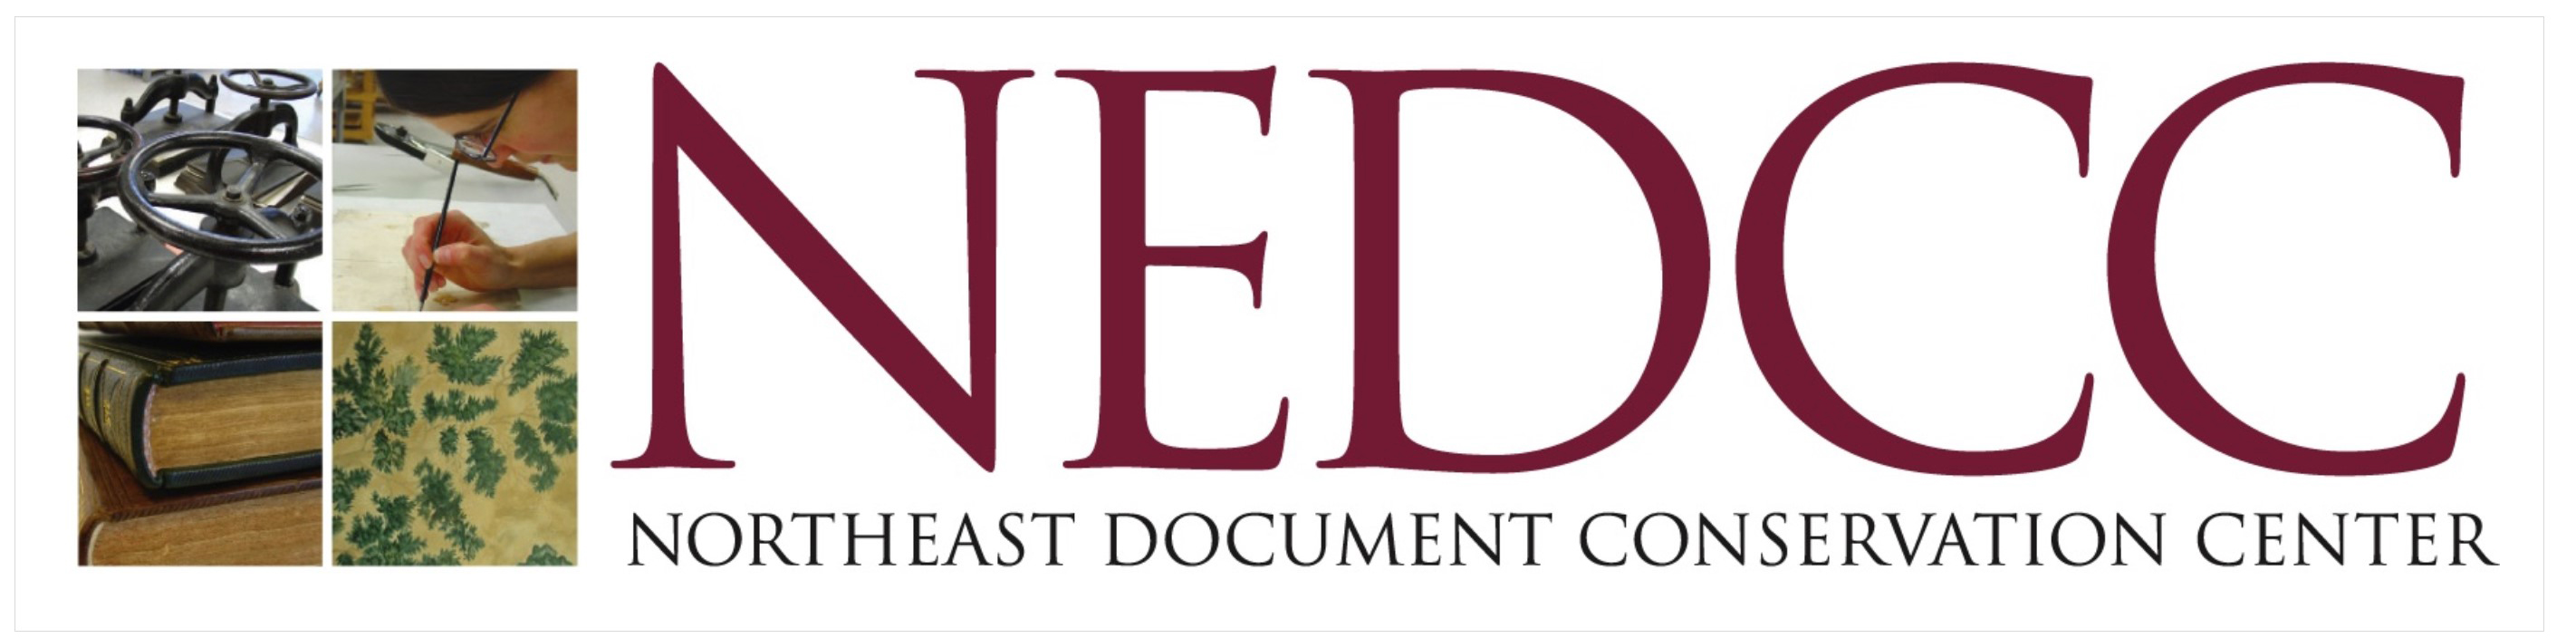 logo for NEDCC